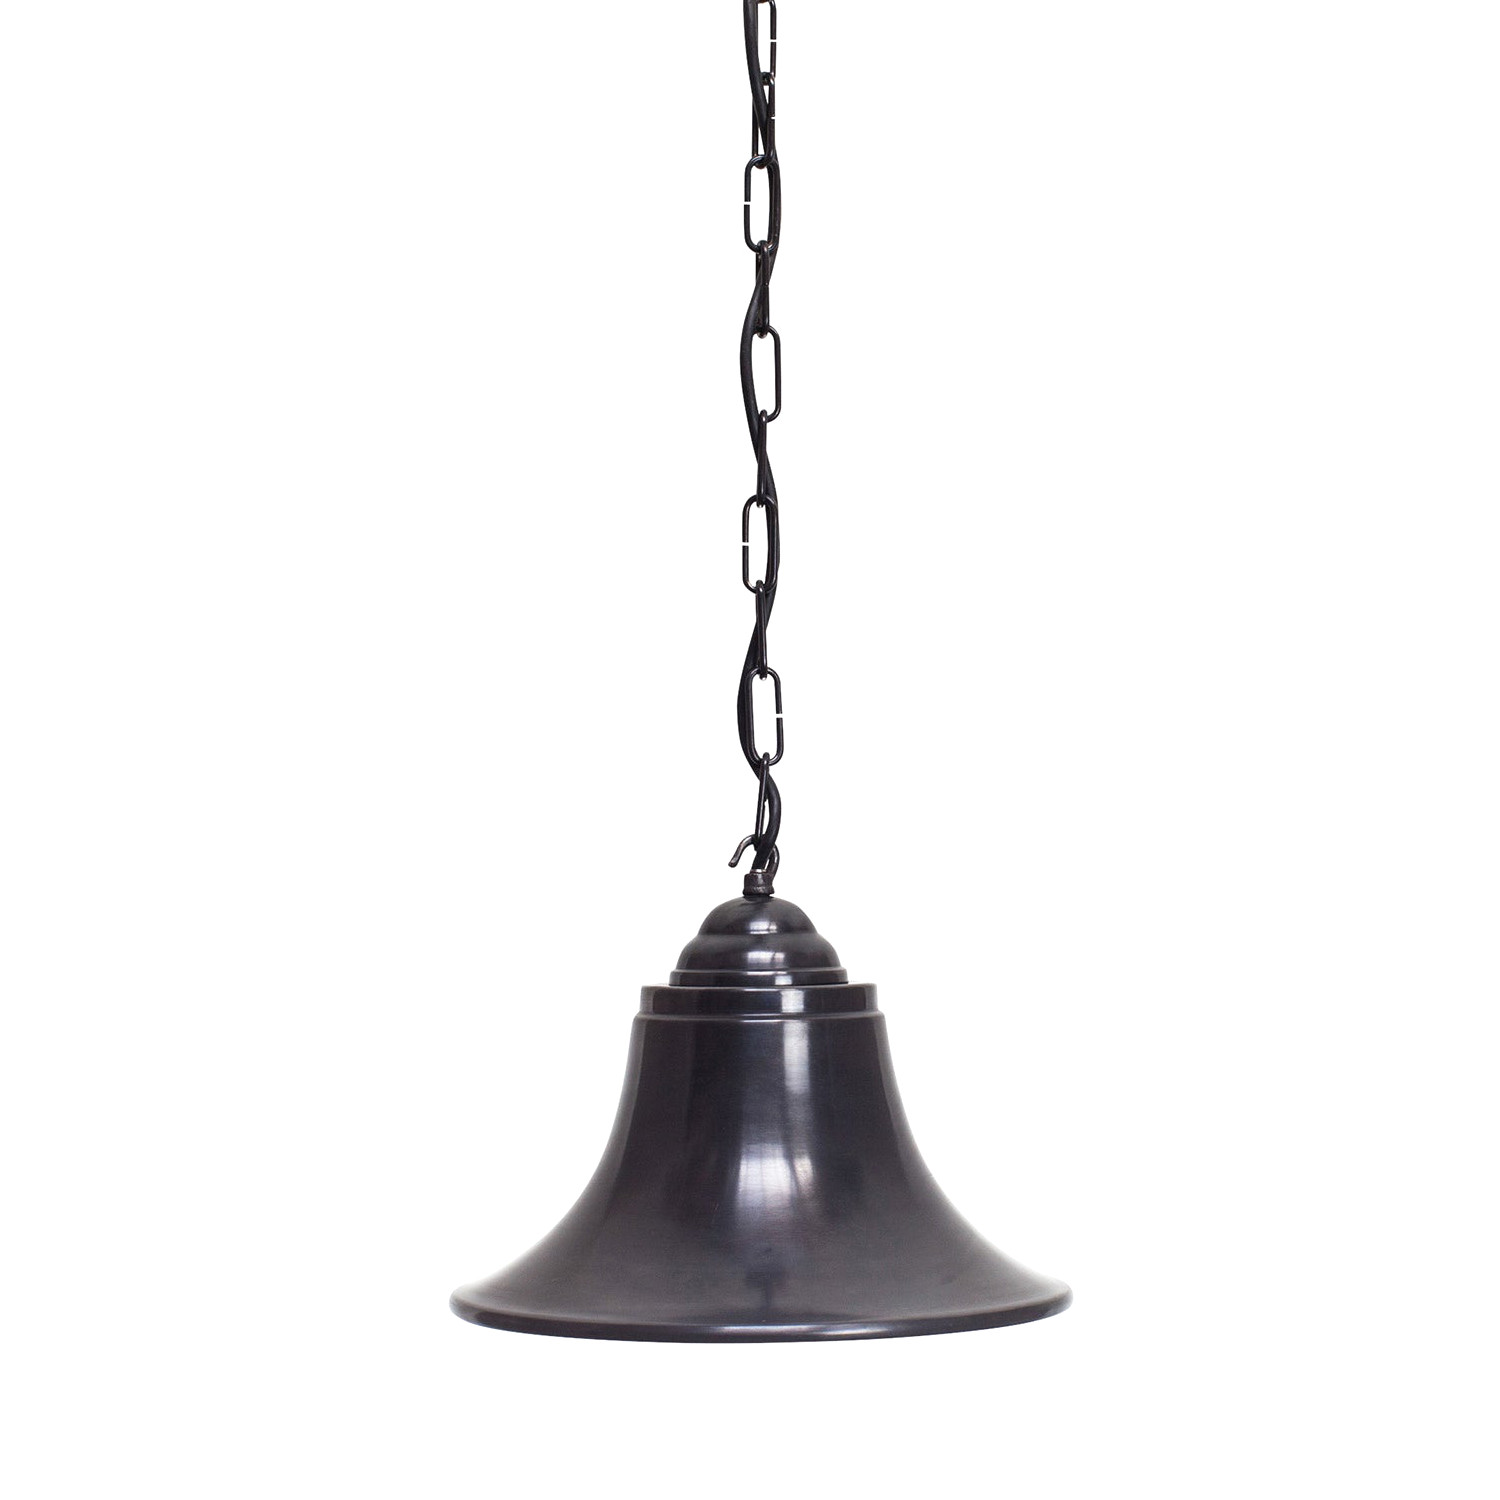 Glockenförmige Pendelleuchte aus Messing, mit Kette: Bronze dunkel